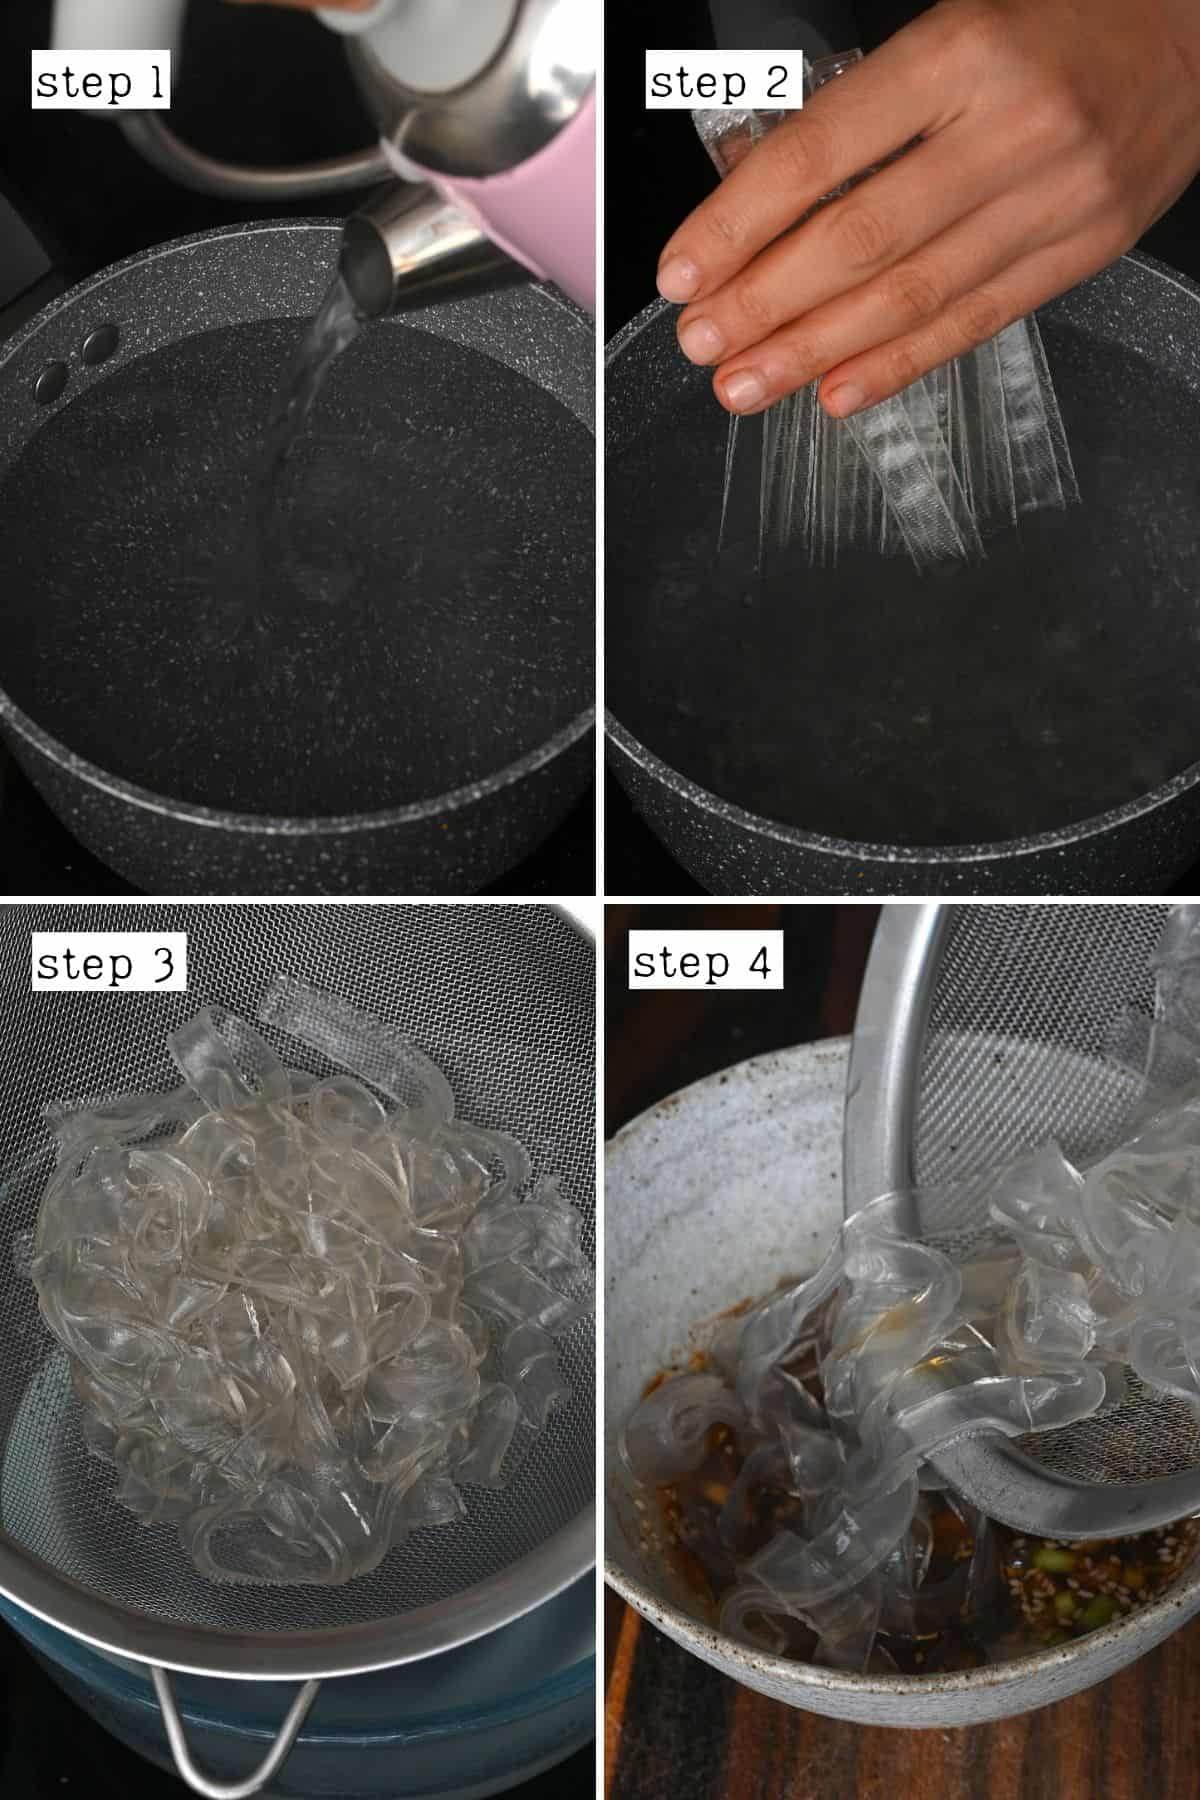 Steps for preparing noodles